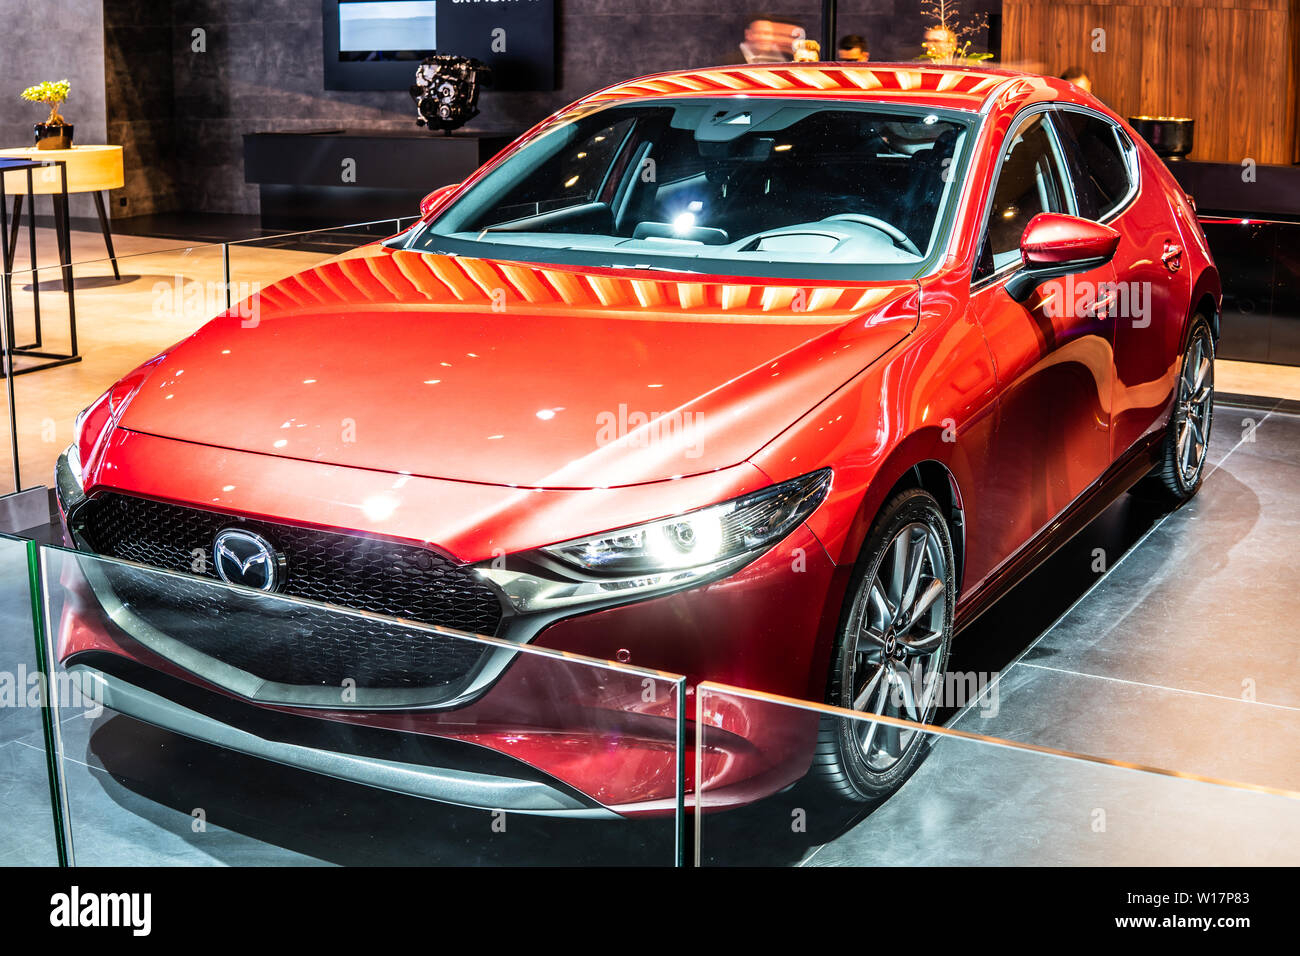 Bruxelles, Belgique, Jan 2019 toutes les nouvelles Mazda 3 à Bruxelles Salon de l'automobile, quatrième génération, voiture compacte fabriquée au Japon par Mazda Banque D'Images